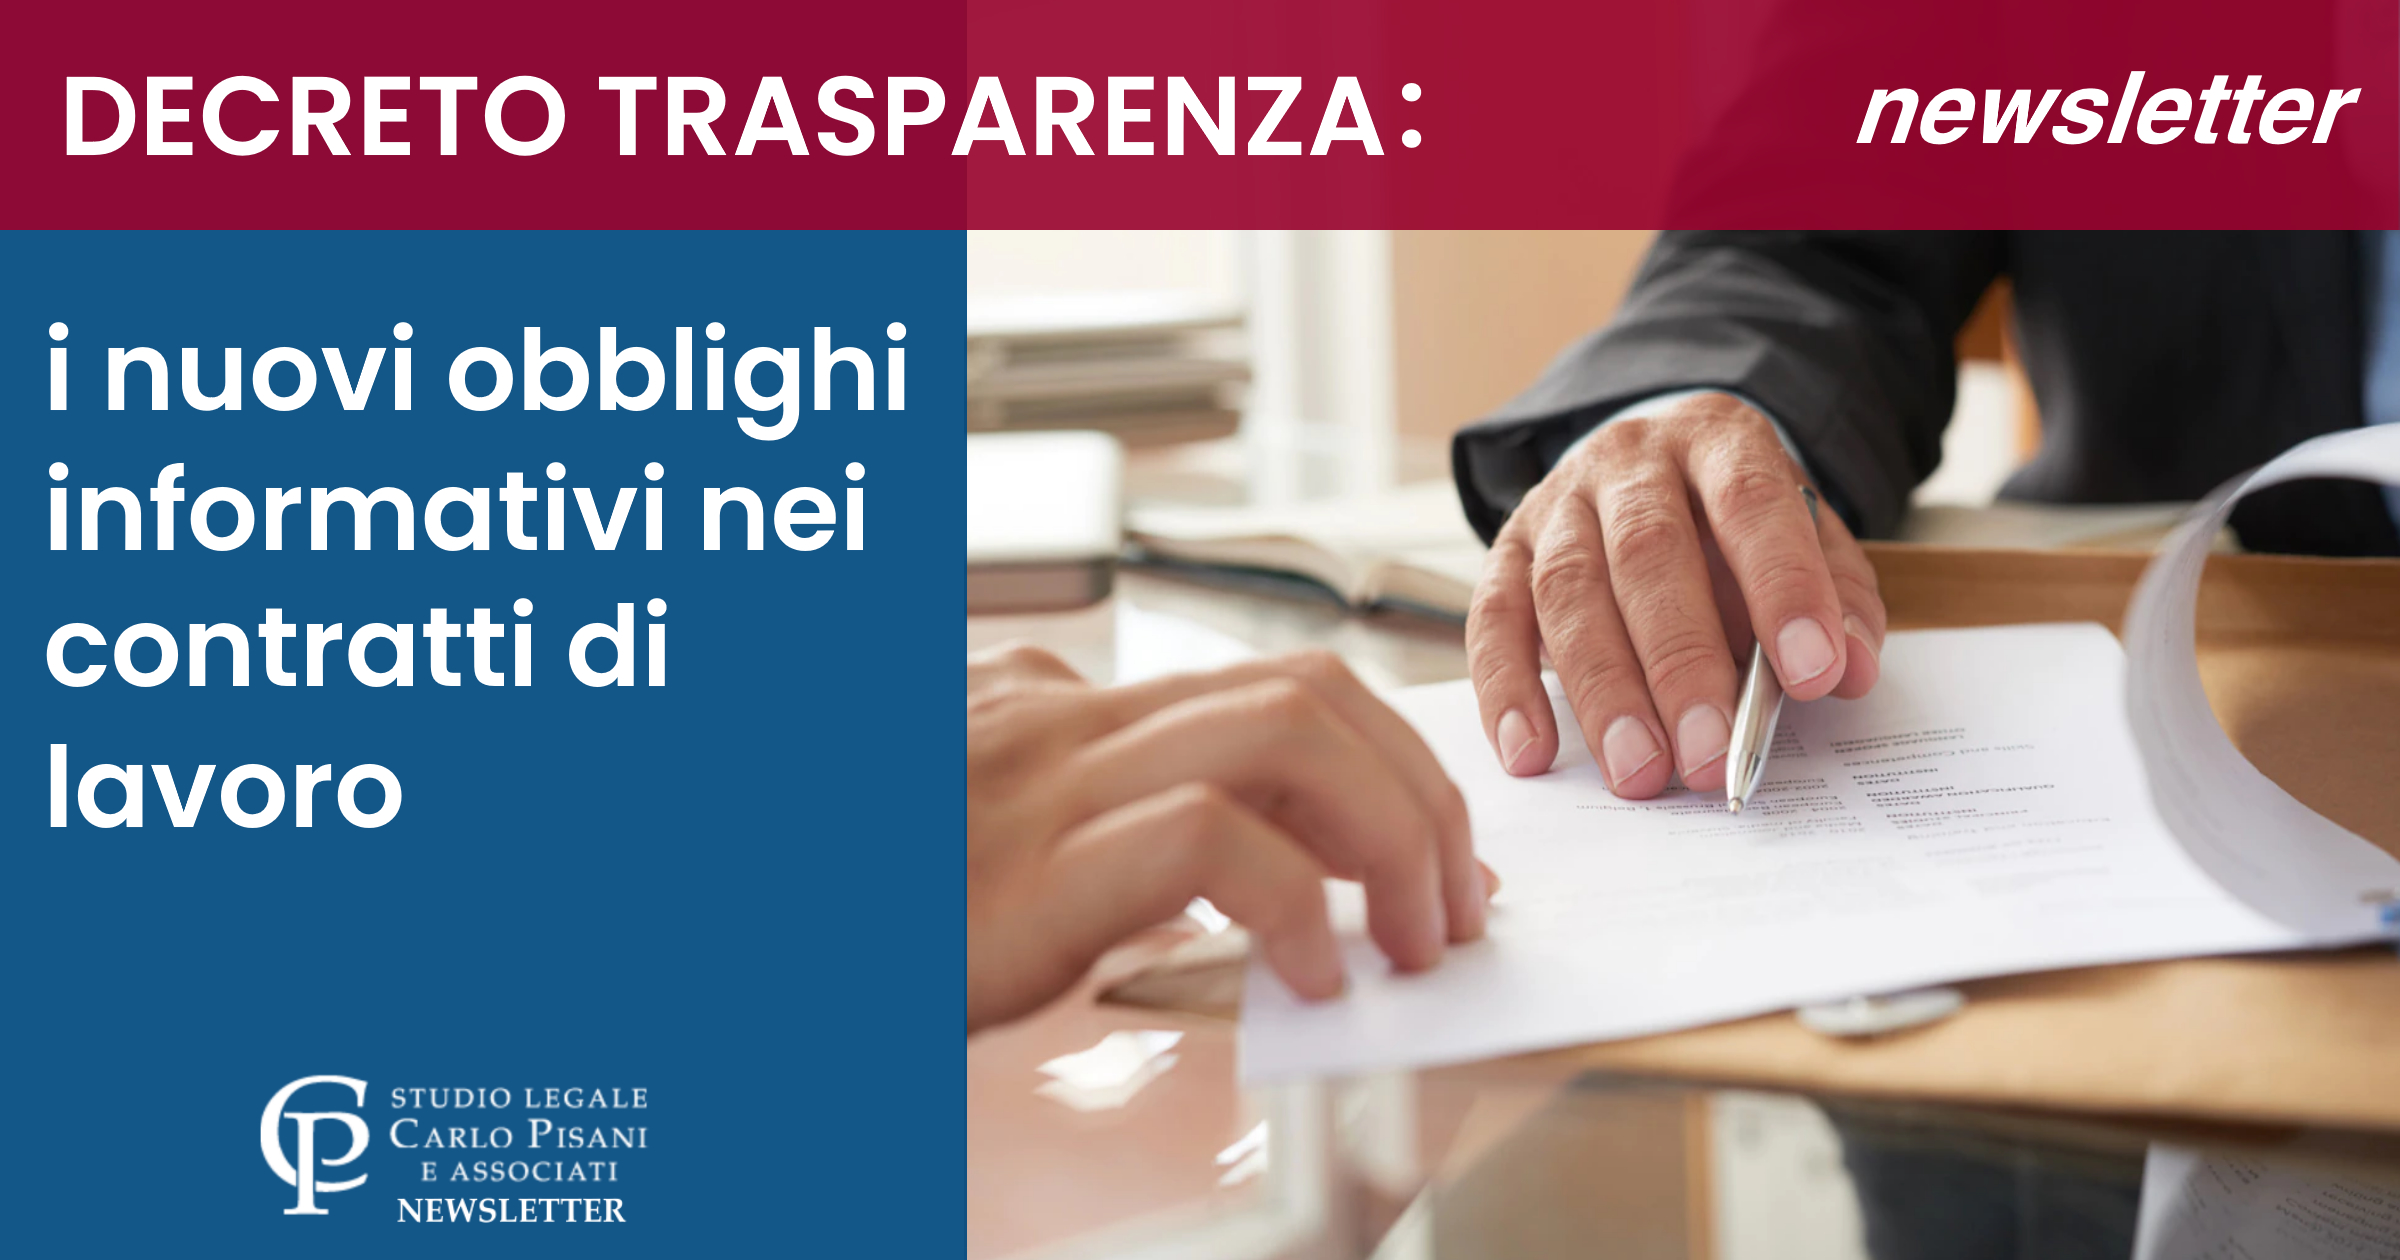 Decreto Trasparenza: i nuovi obblighi informativi nei contratti di lavoro.